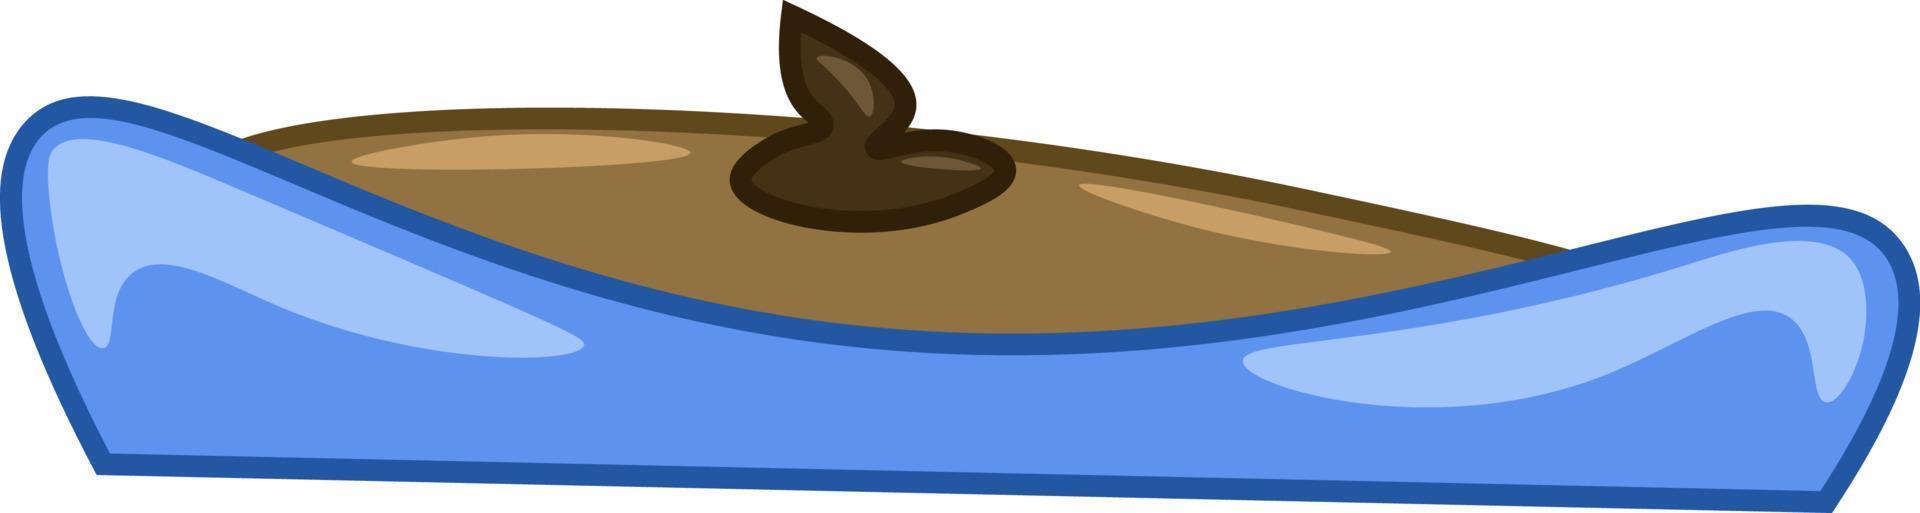 una caja de arena azul, un vector o una ilustración en color.